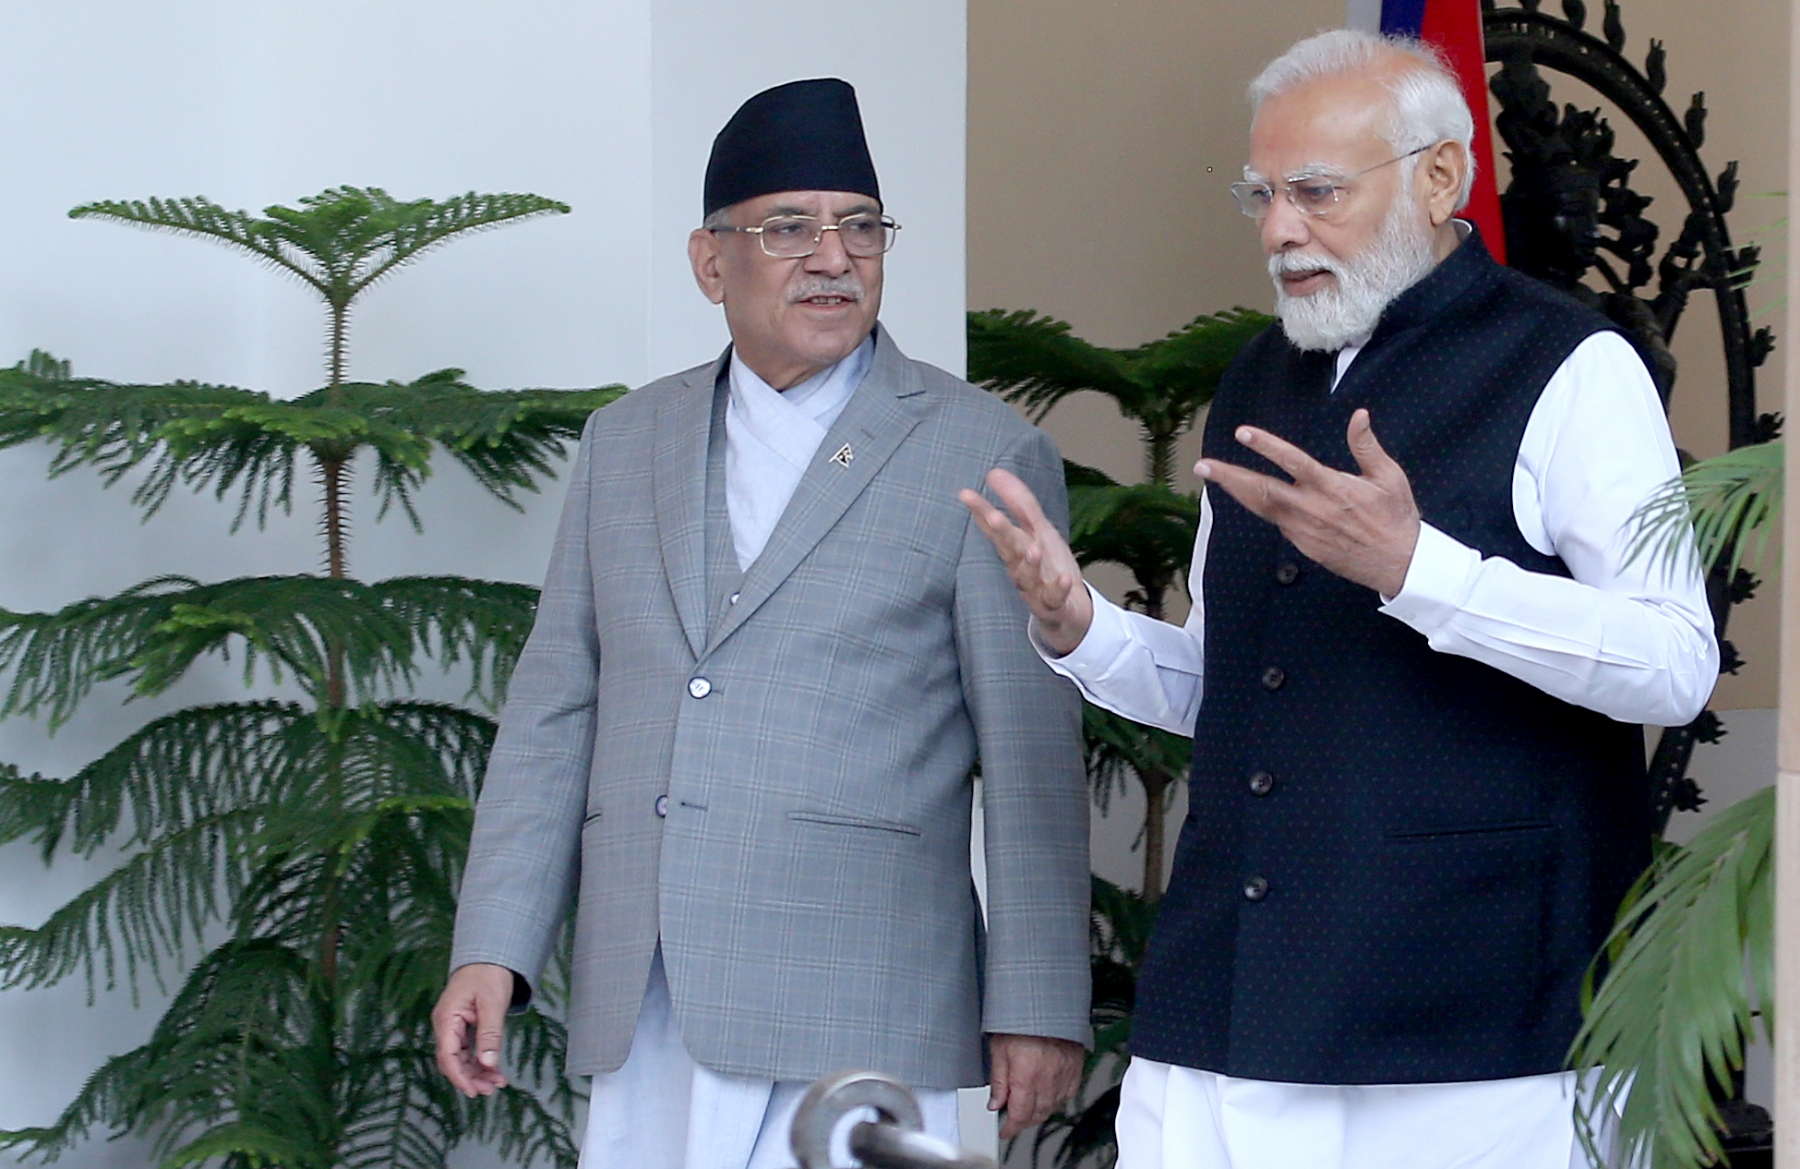 नई दिल्ली में गुरुवार 1 जून को हैदराबाद हाउस में प्रधानमंत्री नरेंद्र मोदी और नेपाल के प्रधानमंत्री पुष्प कमल दहल 'प्रचंड ने मुलाकात करते। हिंदुस्थान समाचार/ फोटो गणेश बिष्ट